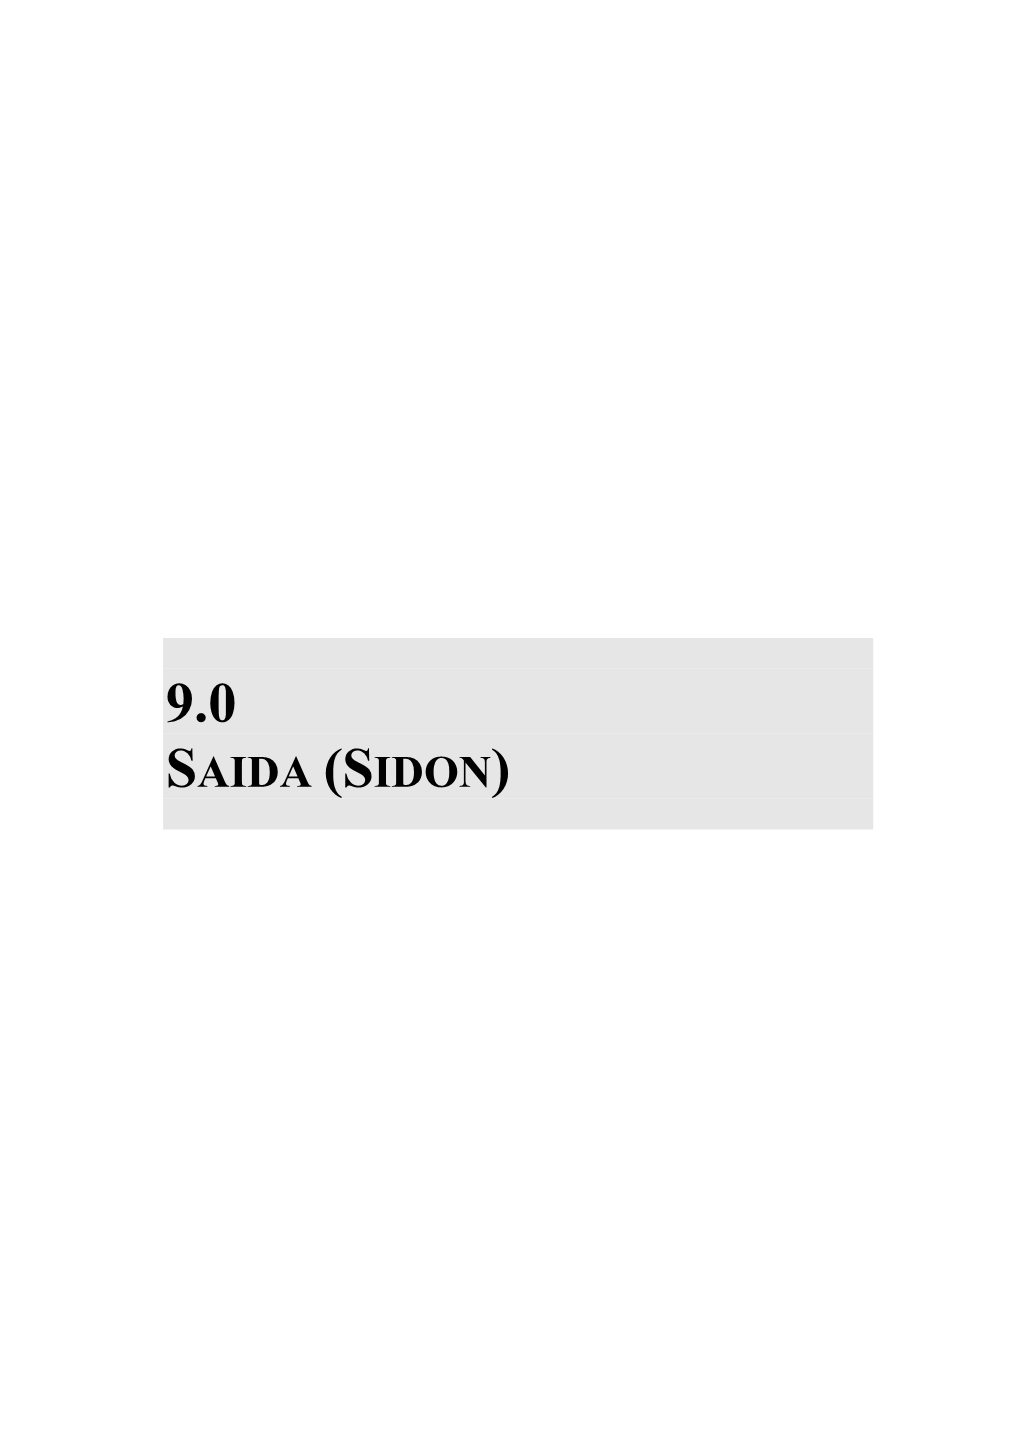 9.0 Saida (Sidon)